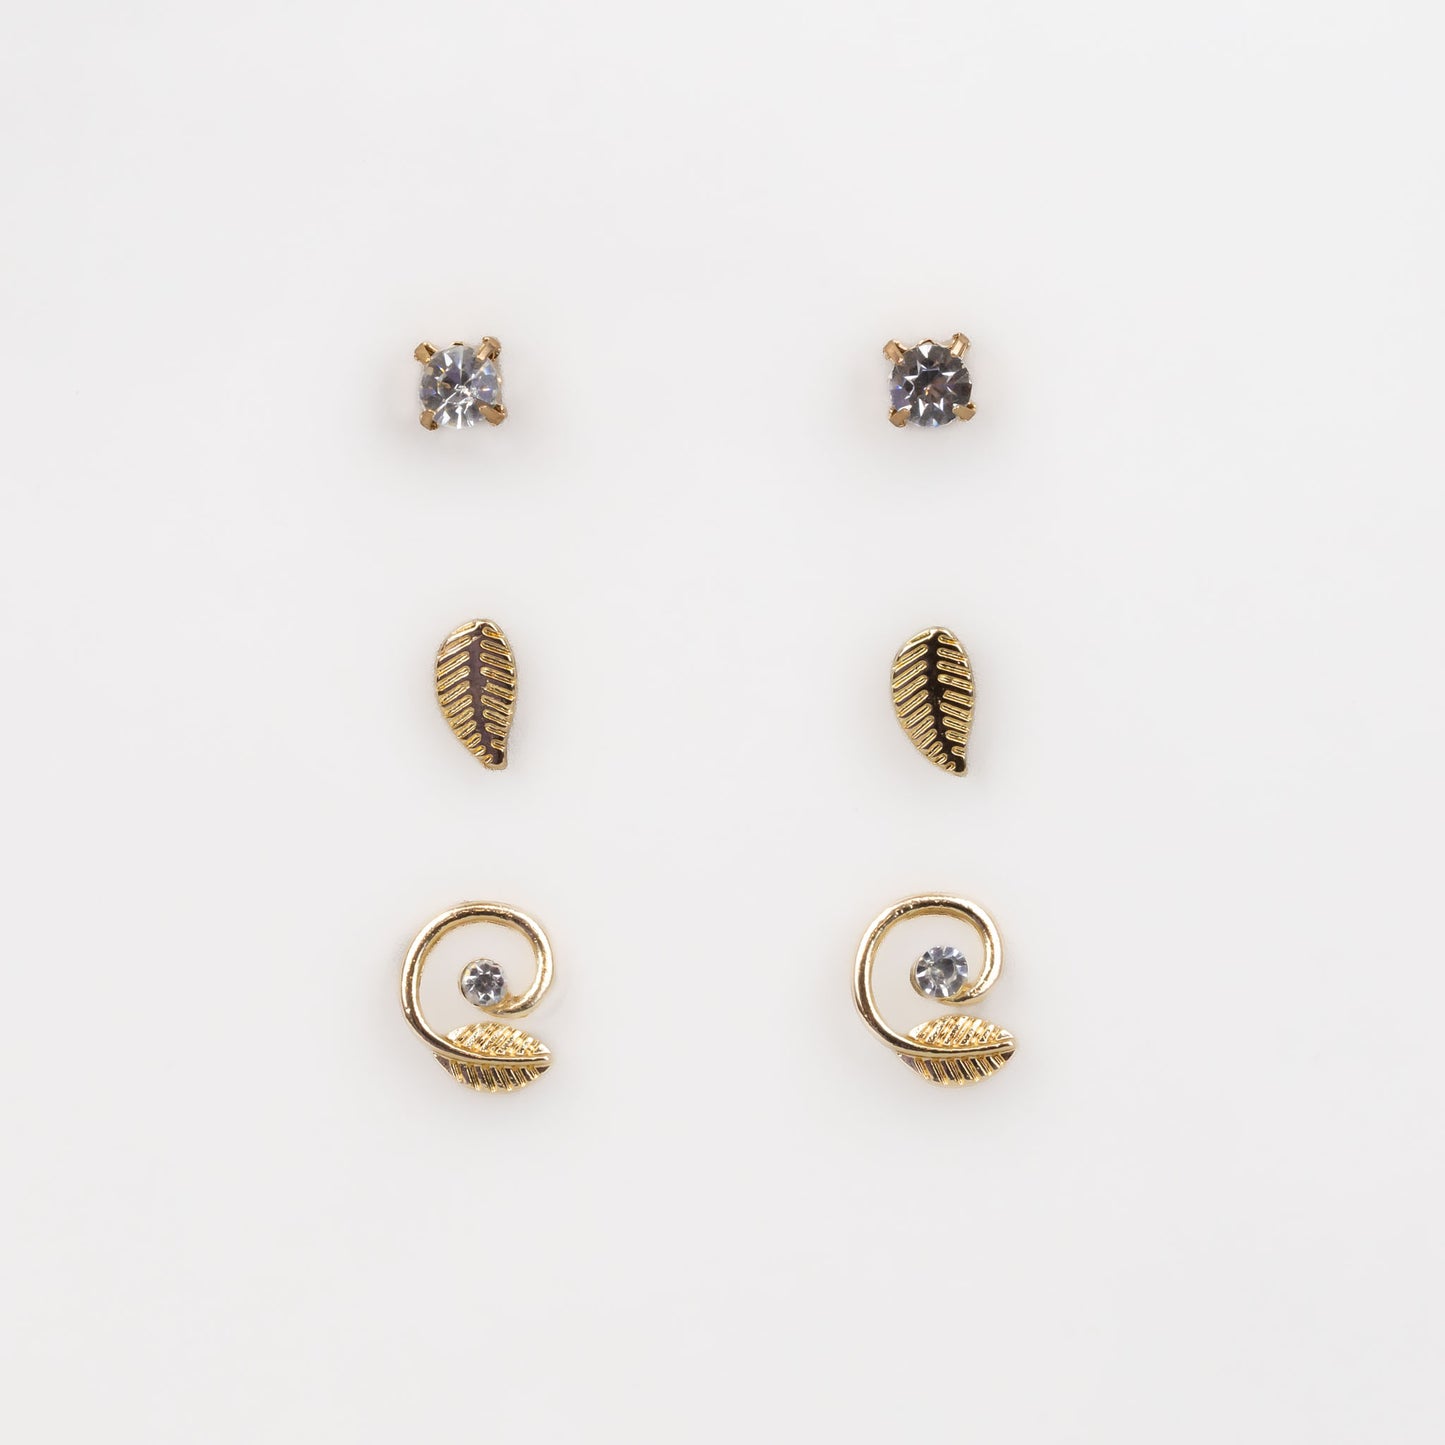 Cercei mici cu spirală, frunze și pietre, set 3 perechi - Auriu